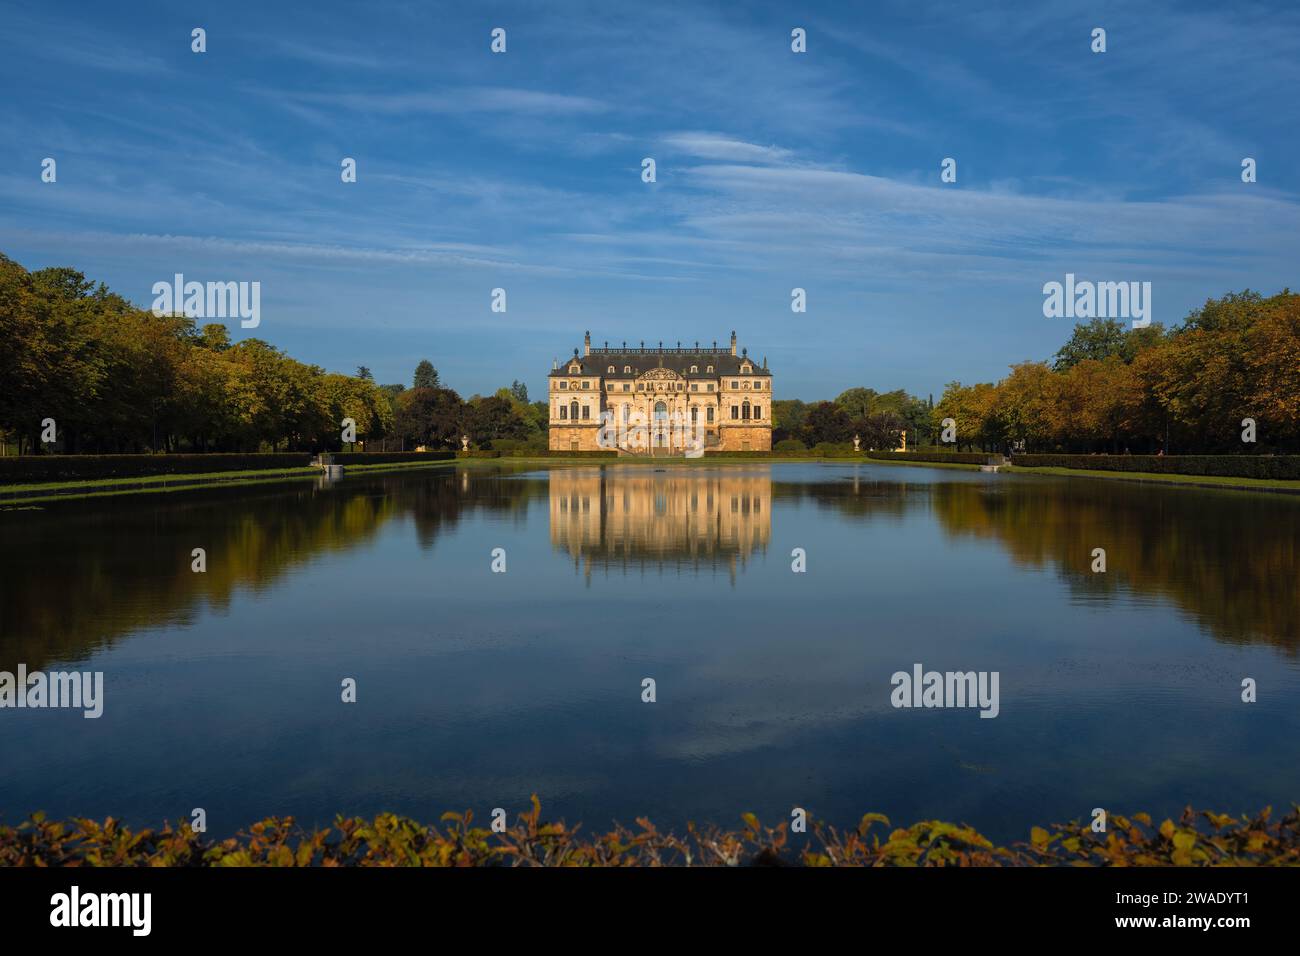 Palais Grosser Garten - il Grand Garden Palace di Dresda. Foto Stock